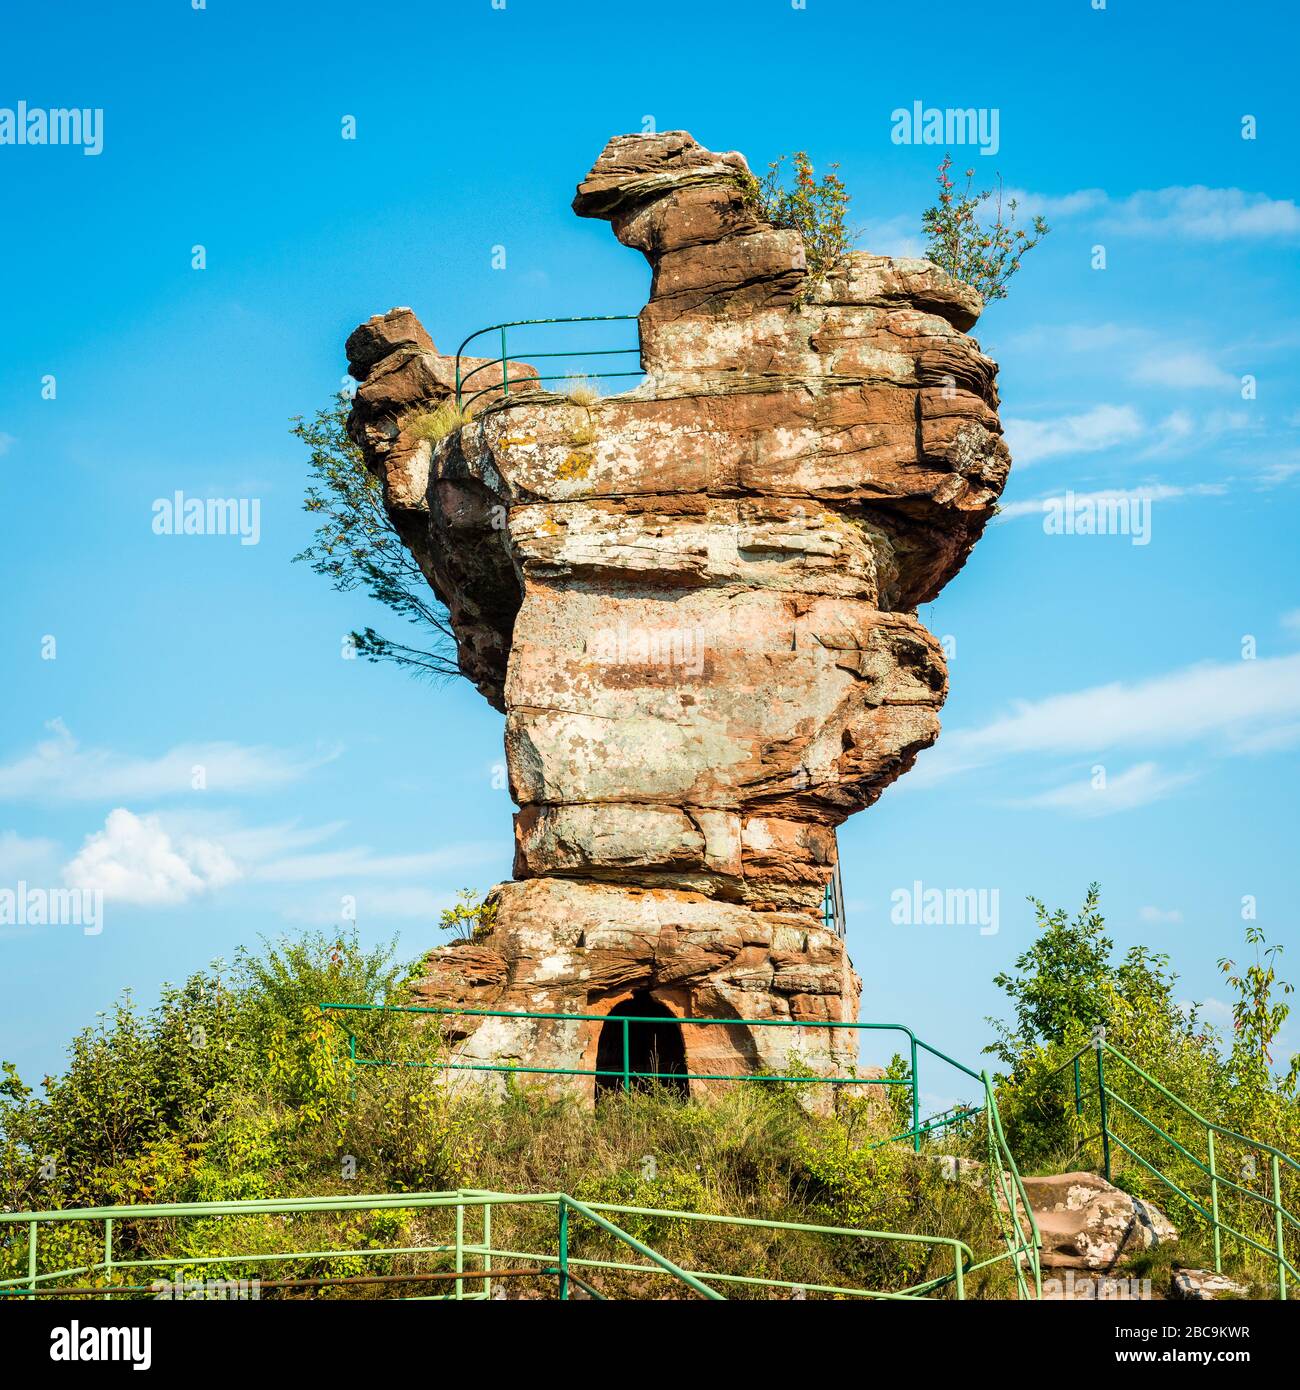 Les ruines du château de Drachenfels, un château de roche sculpté dans la pierre, avec une dent molaire, une tour semblable à la tête d'un dragon, comme plate-forme d'observation, colorée Banque D'Images